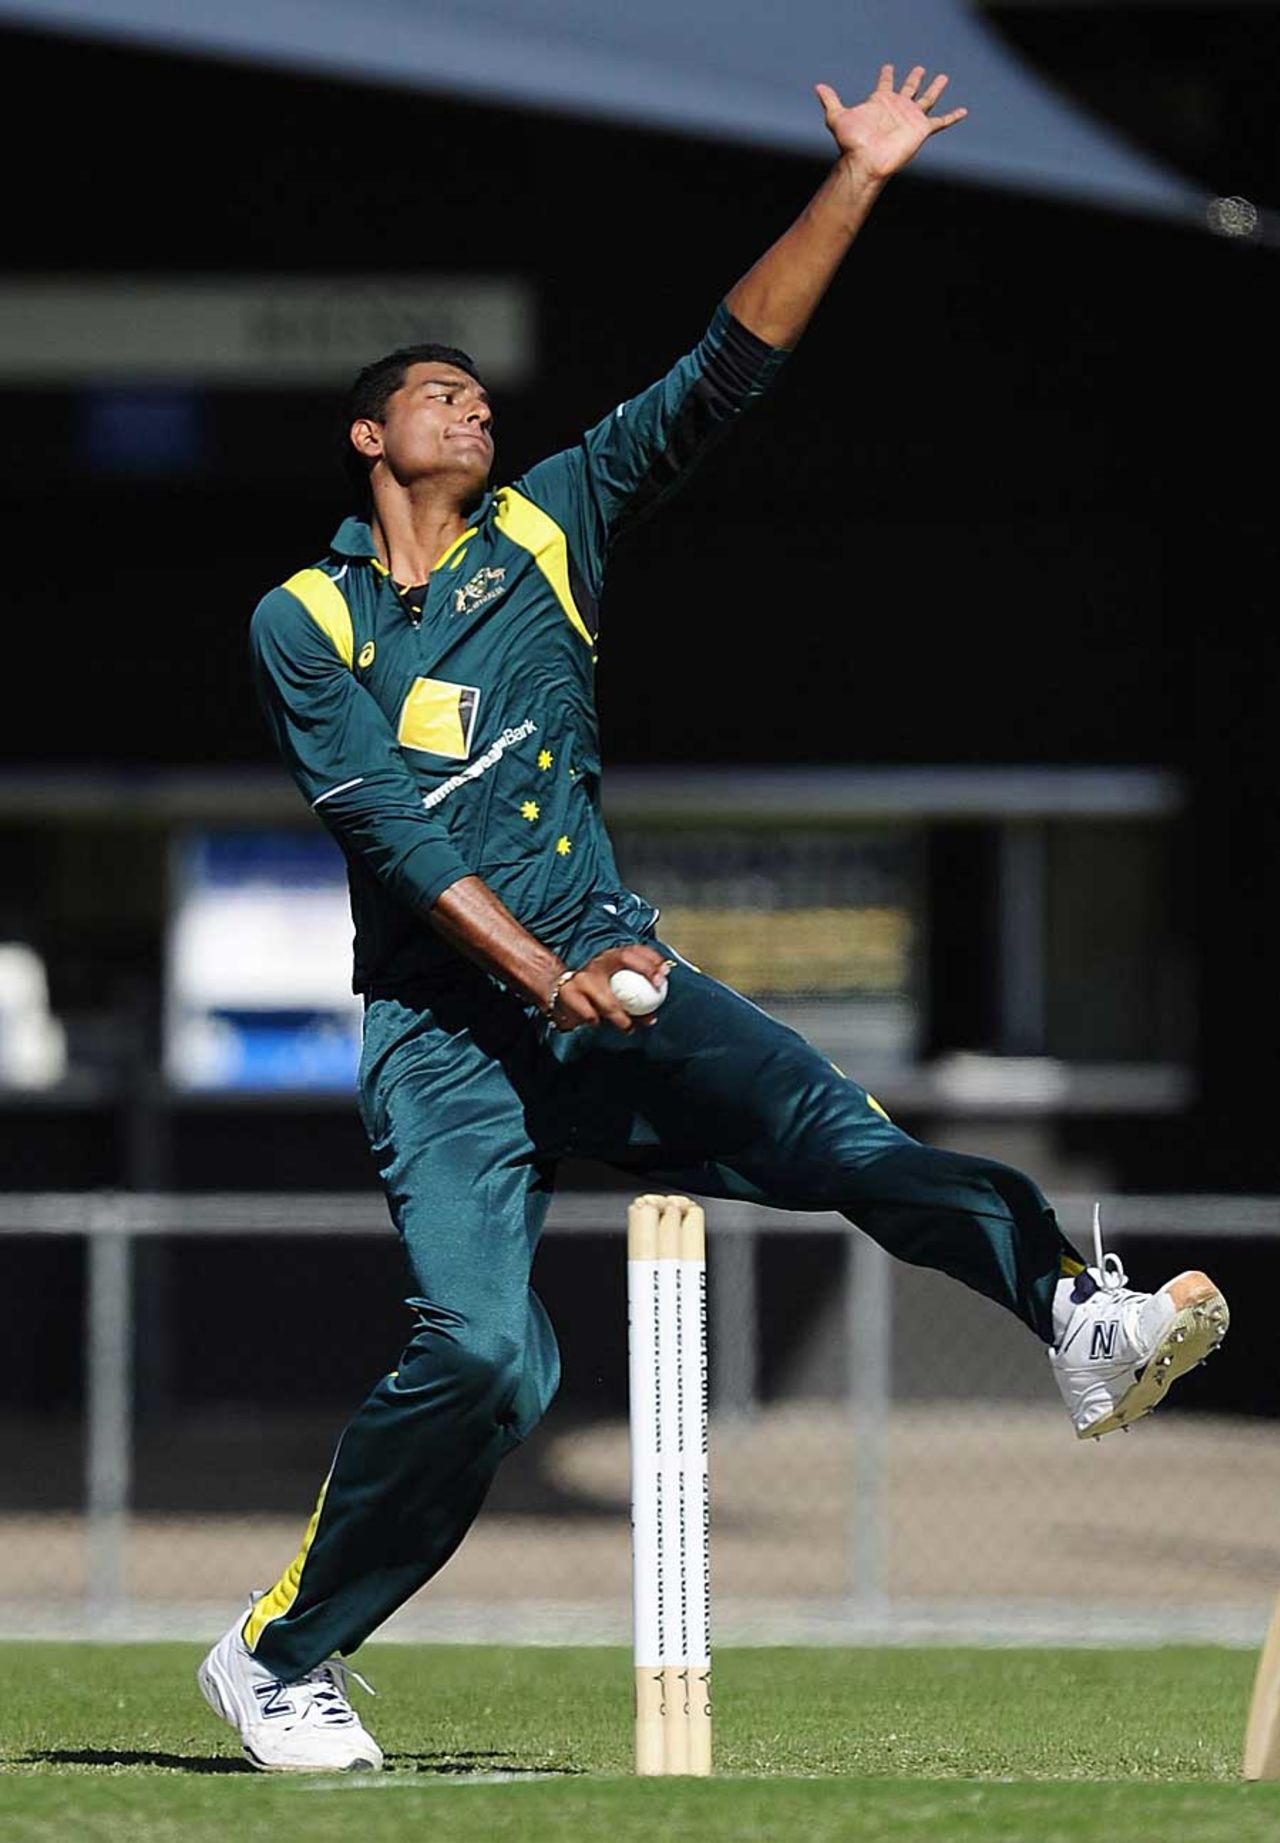 Gurinder Sandhu picked up three wickets, Australia Under-19 v India Under-19, Townsville, April 7, 2012